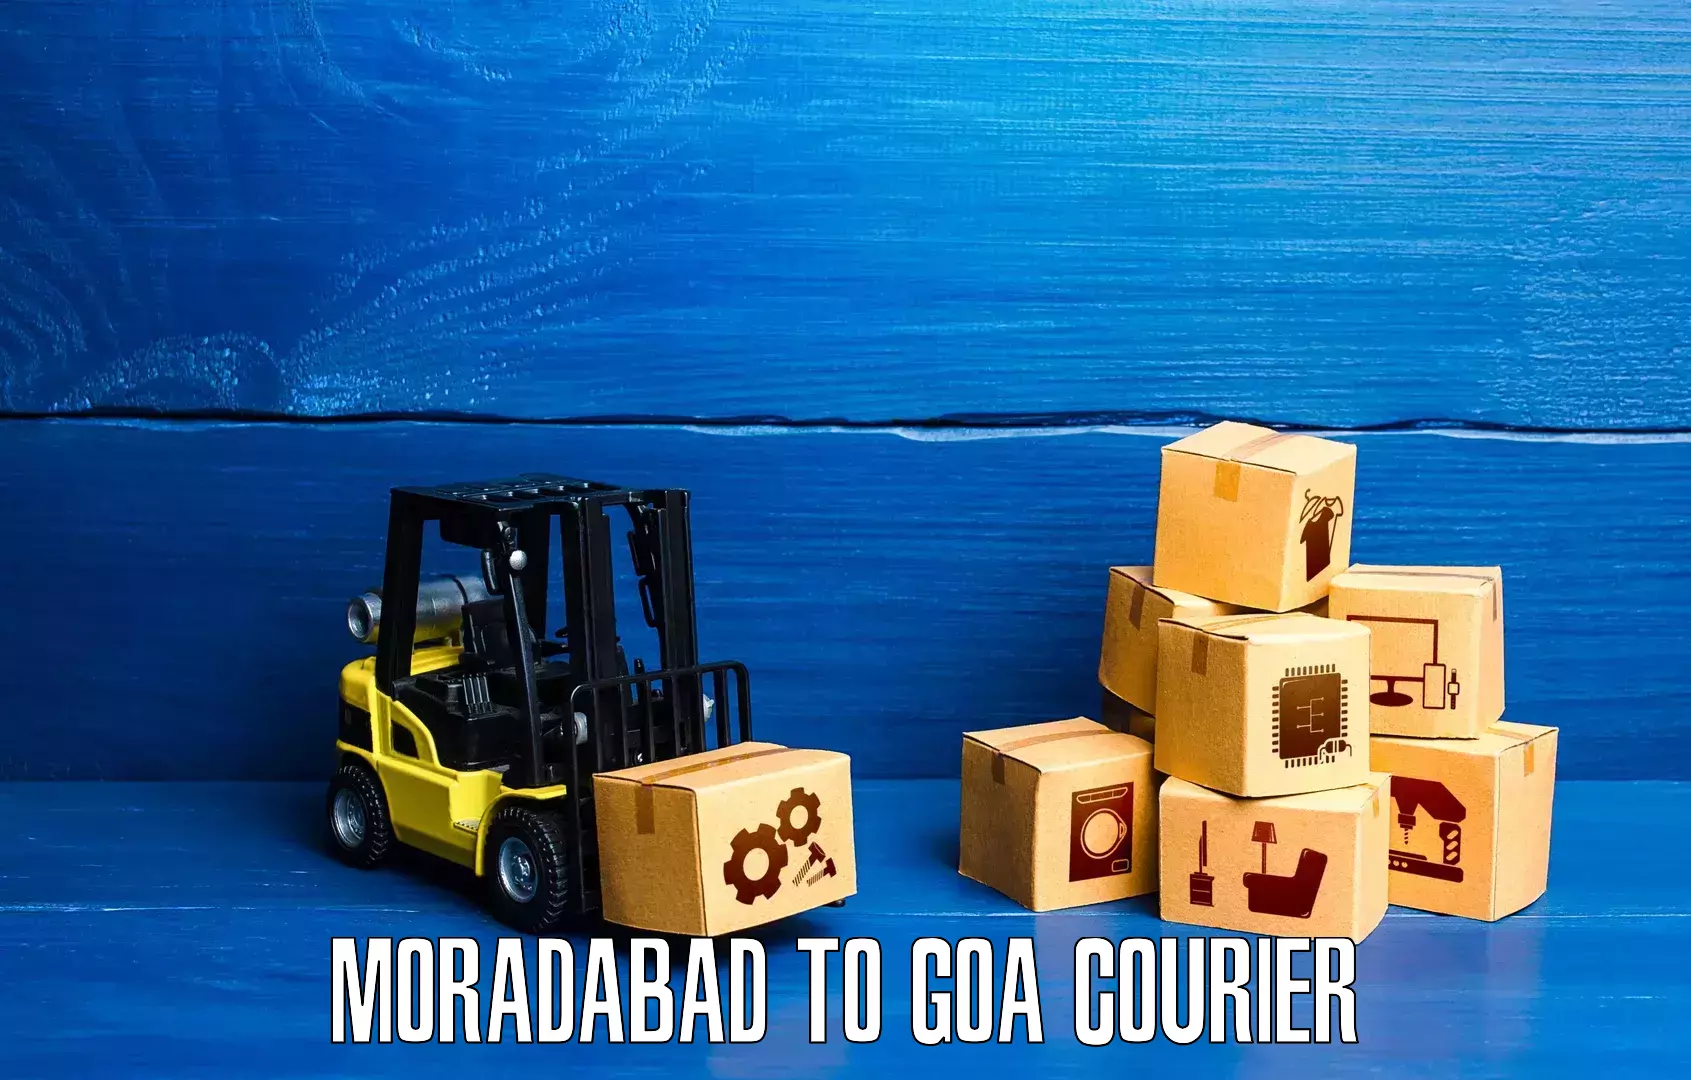 Courier service innovation Moradabad to Ponda